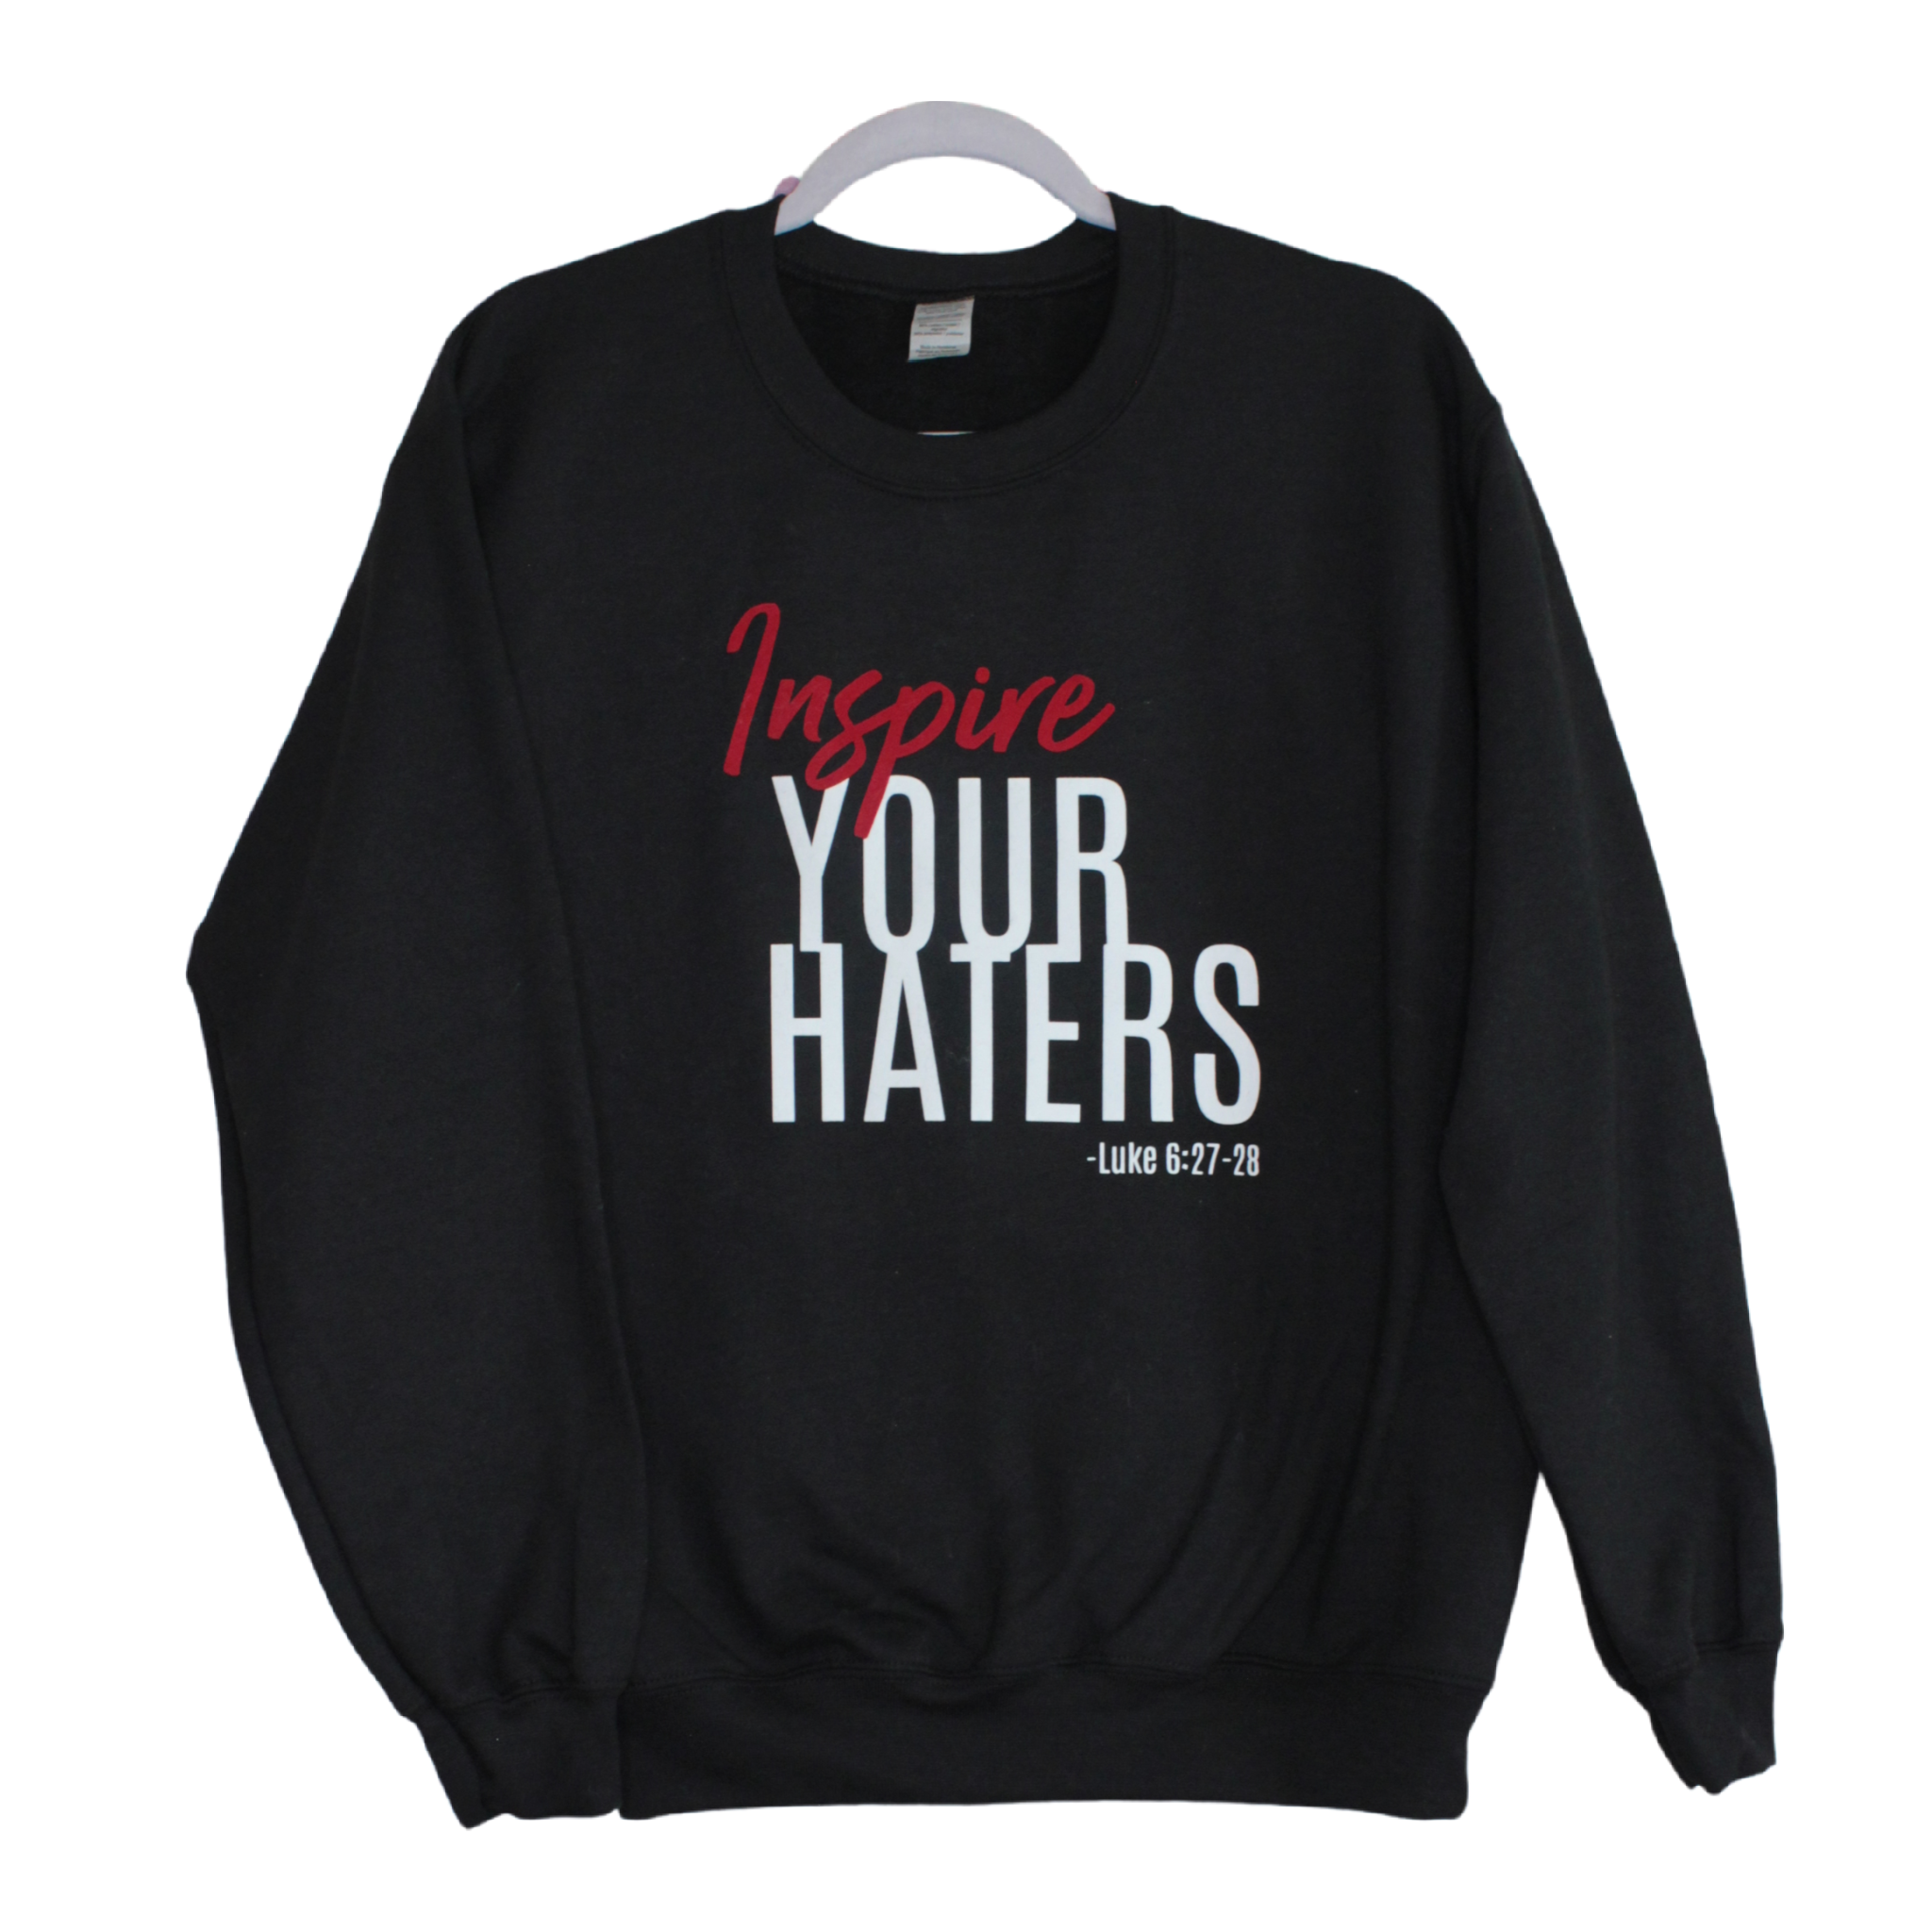 "INSPIRE YOUR HATERS" Sweatshirt